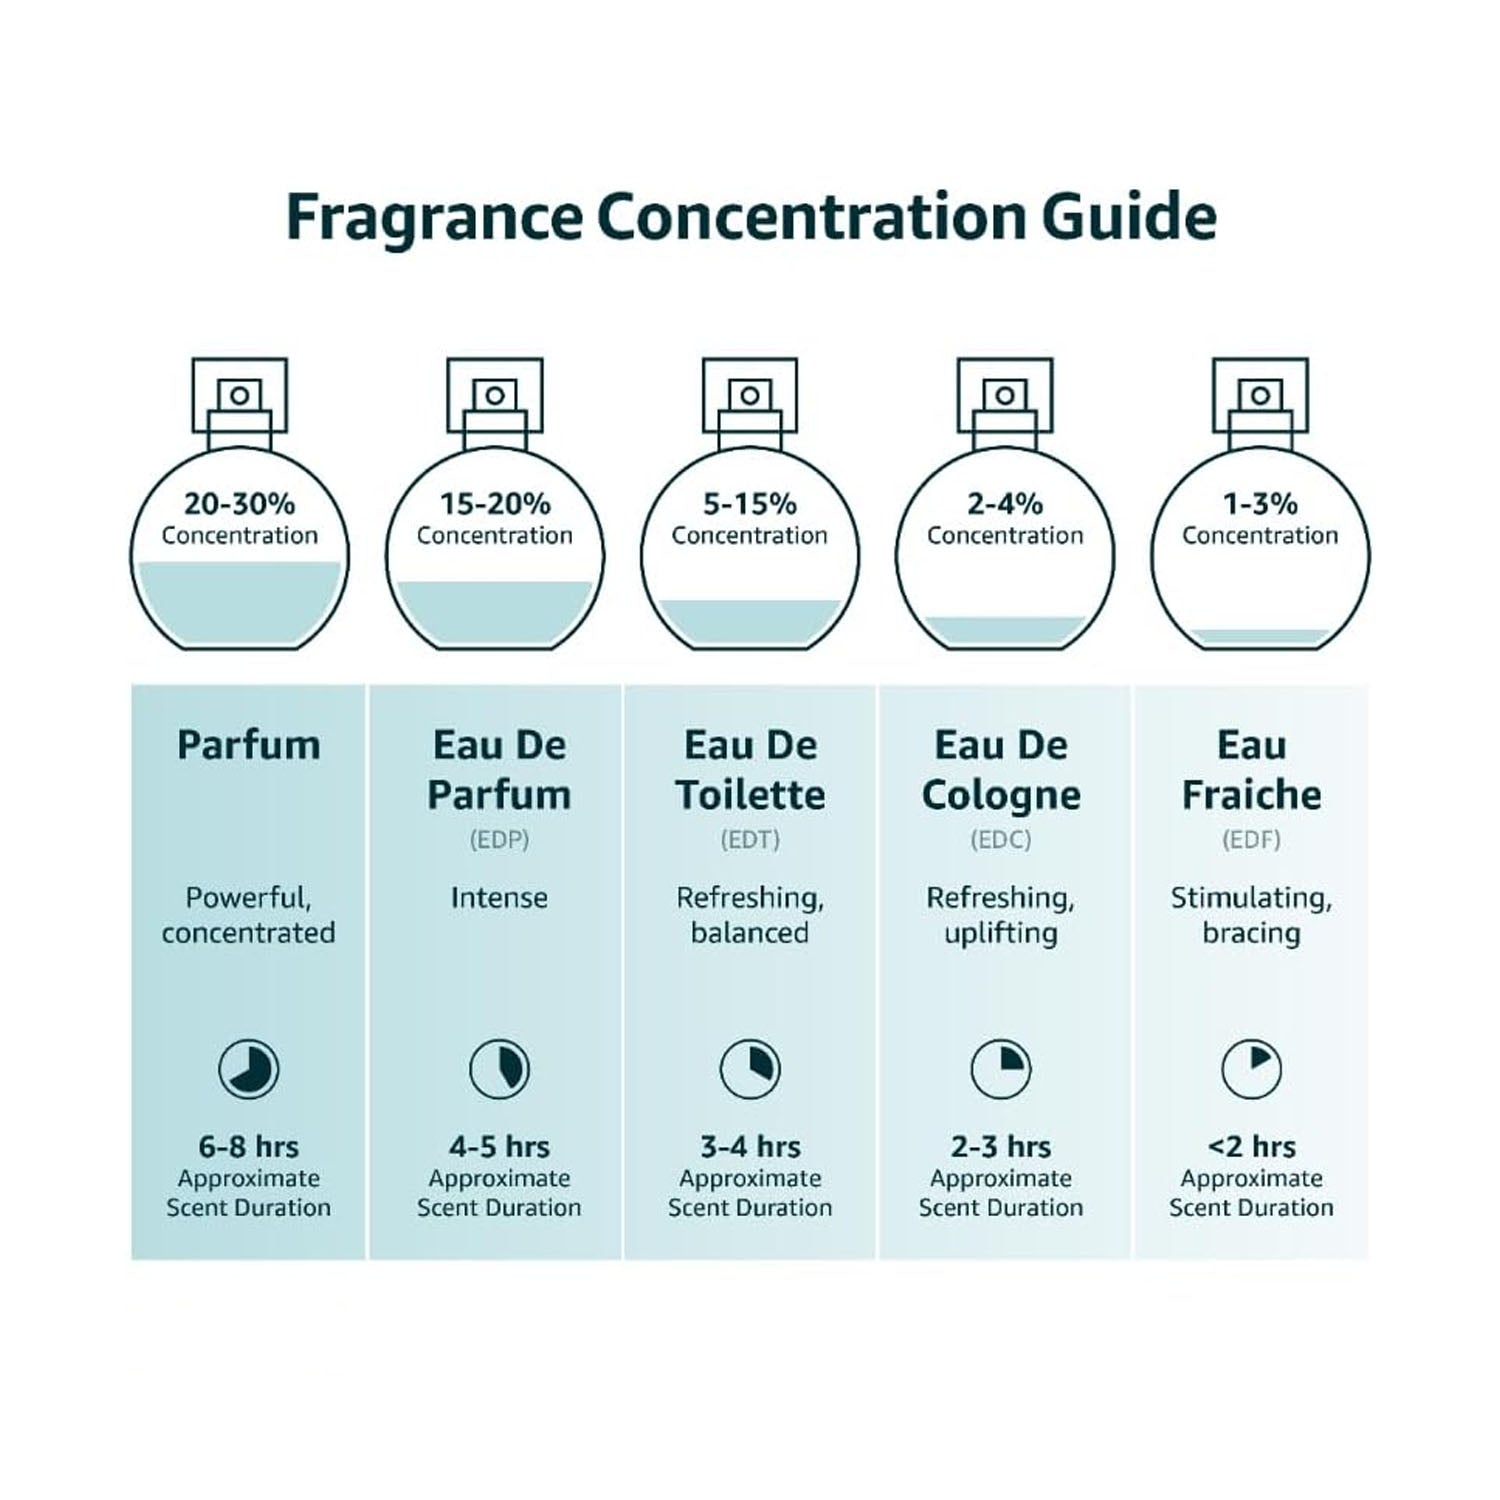 Yves Saint Laurent Y 3.3 Oz Eau De Parfume Spray for Women